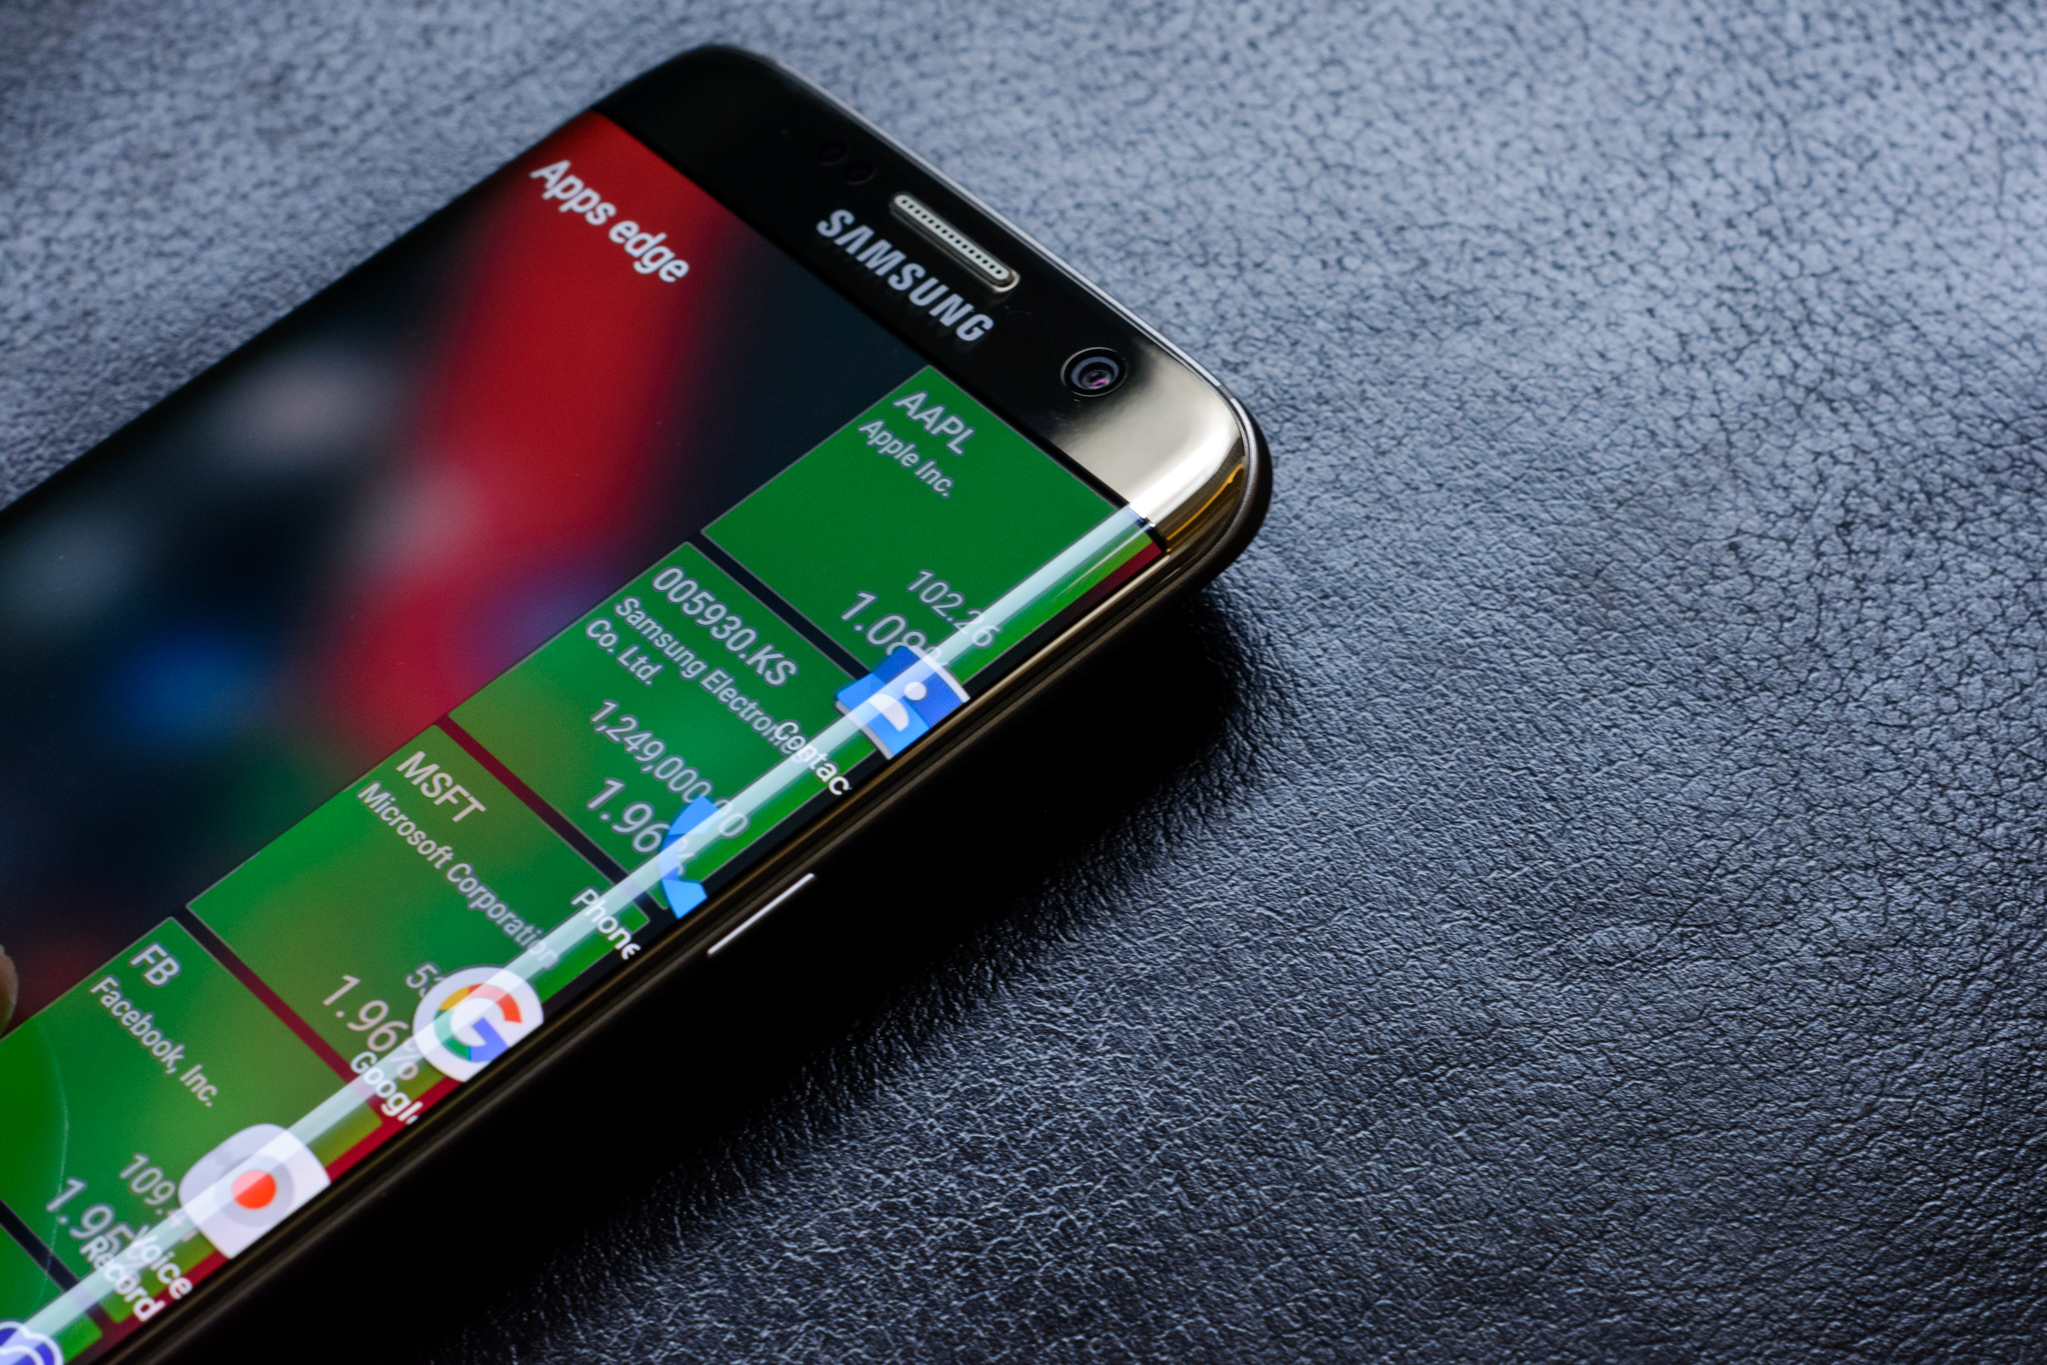 Baterias de Samsung: el gigante herido… ¿Hasta cuando?